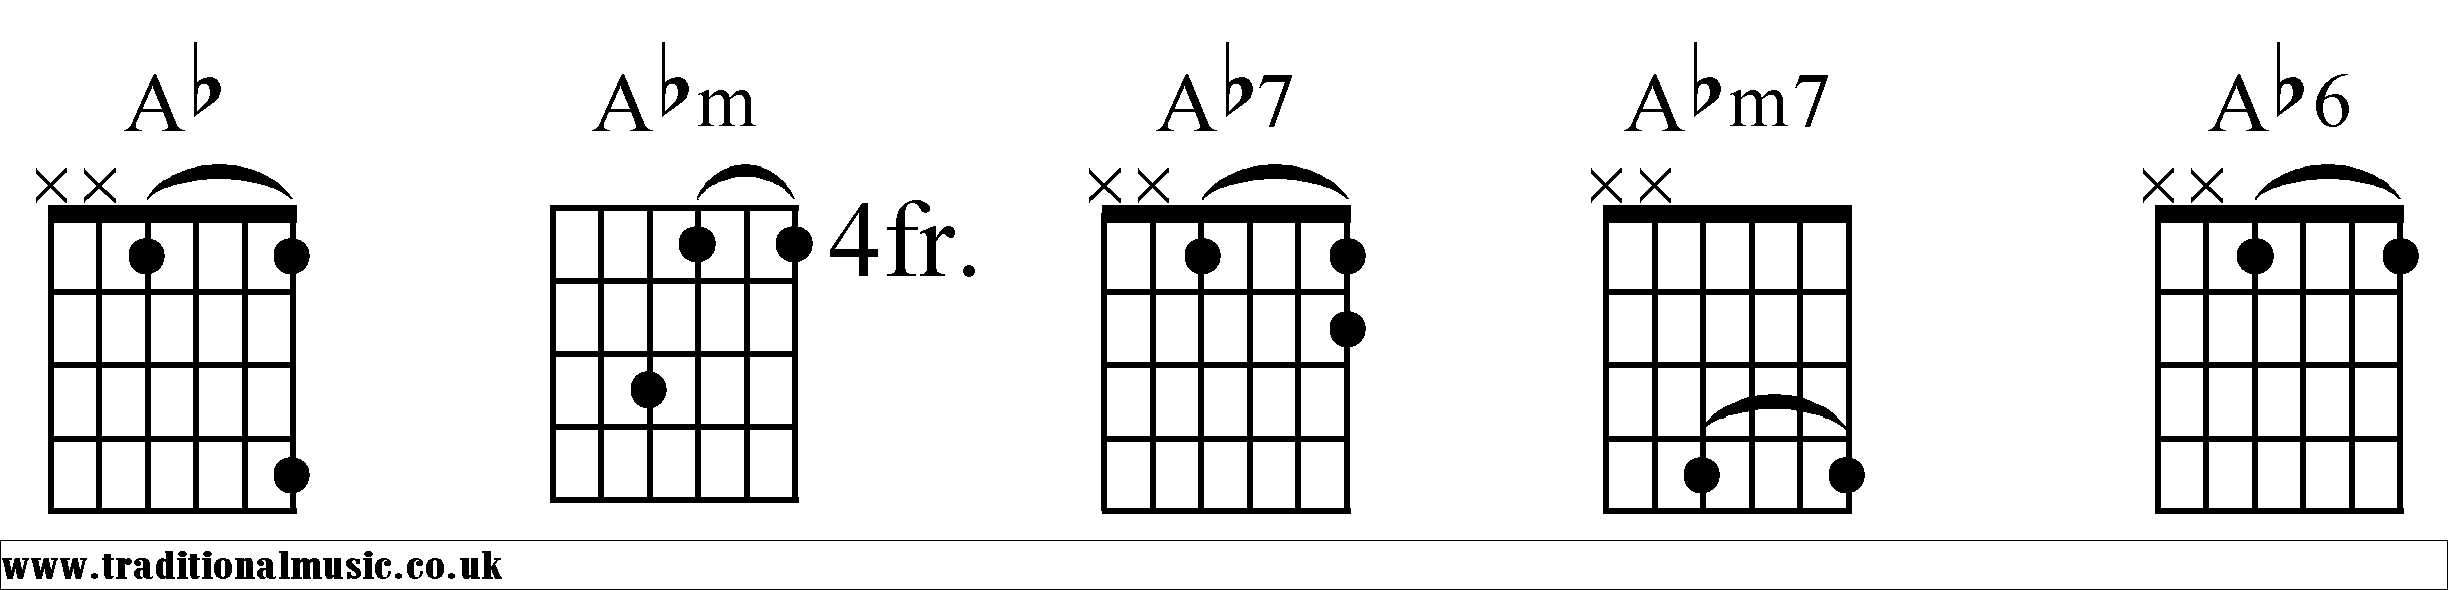 Ab Chords diagrams Guitar 1